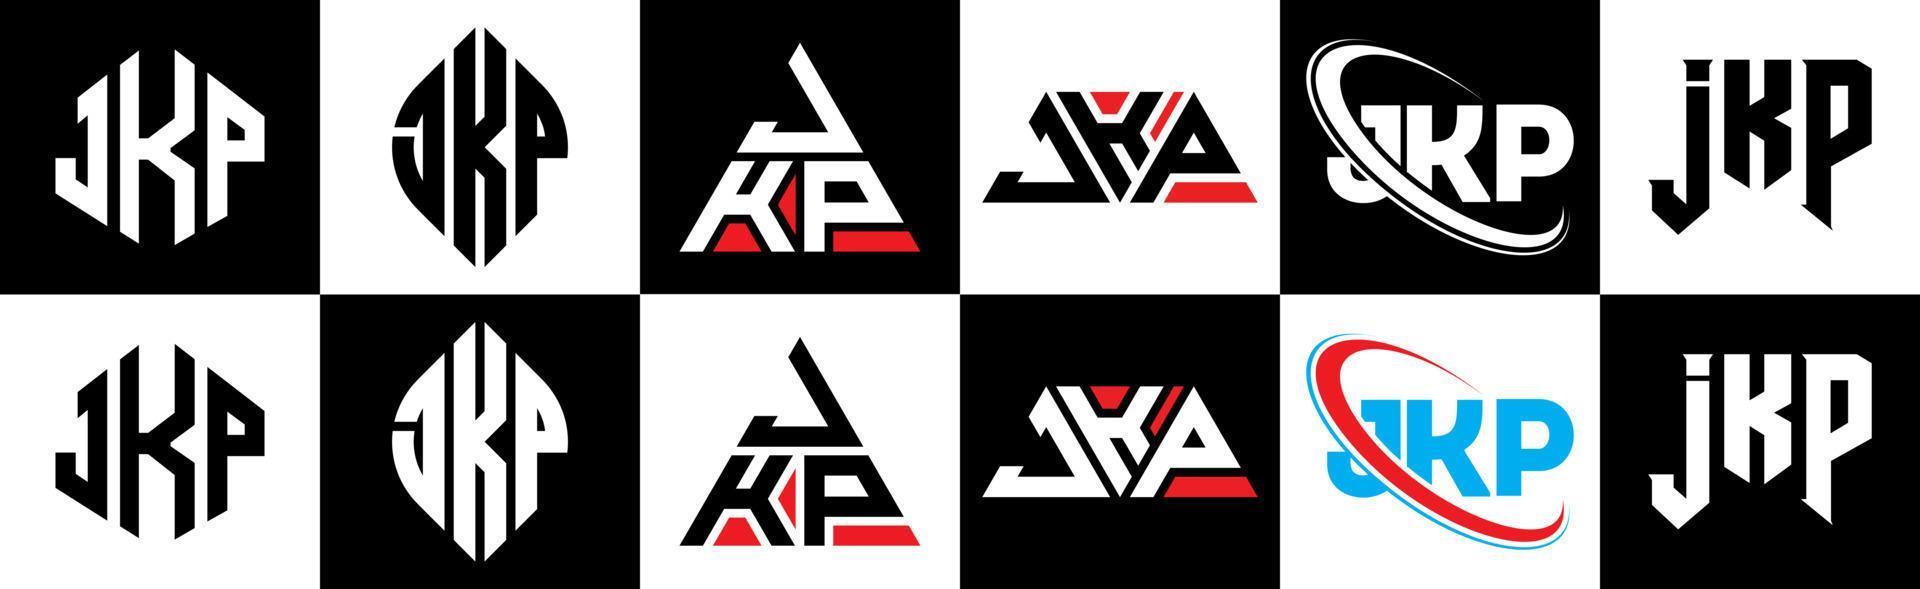 Diseño de logotipo de letra jkp en seis estilos. jkp polígono, círculo, triángulo, hexágono, estilo plano y simple con logotipo de letra de variación de color blanco y negro en una mesa de trabajo. logotipo minimalista y clásico de jkp vector